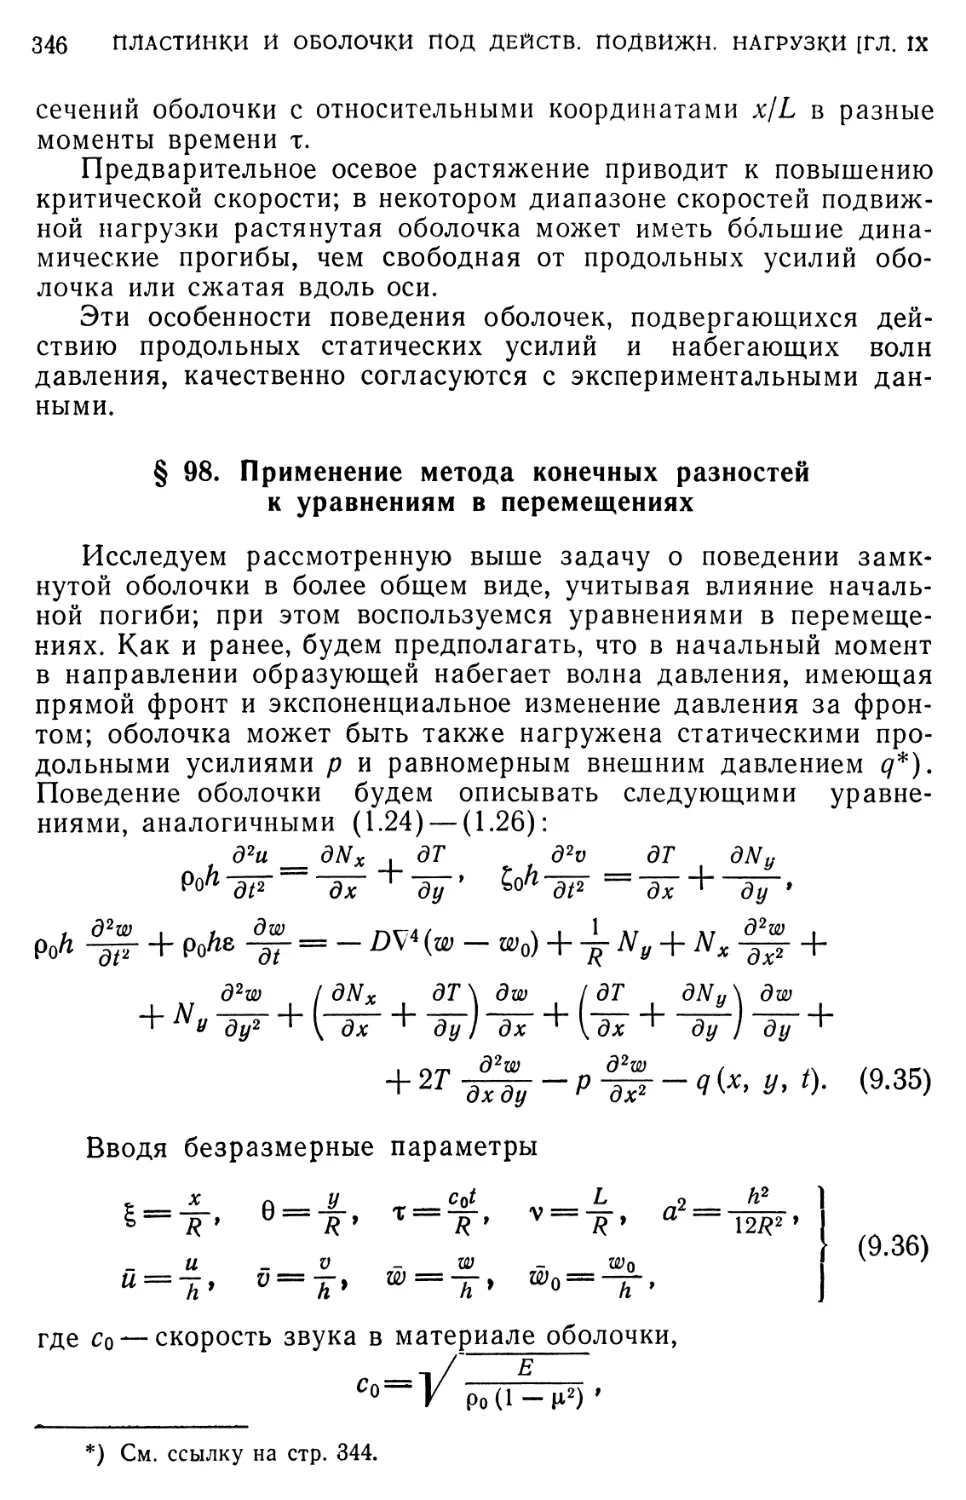 § 98. Применение метода конечных разностей к уравнениям в перемещениях